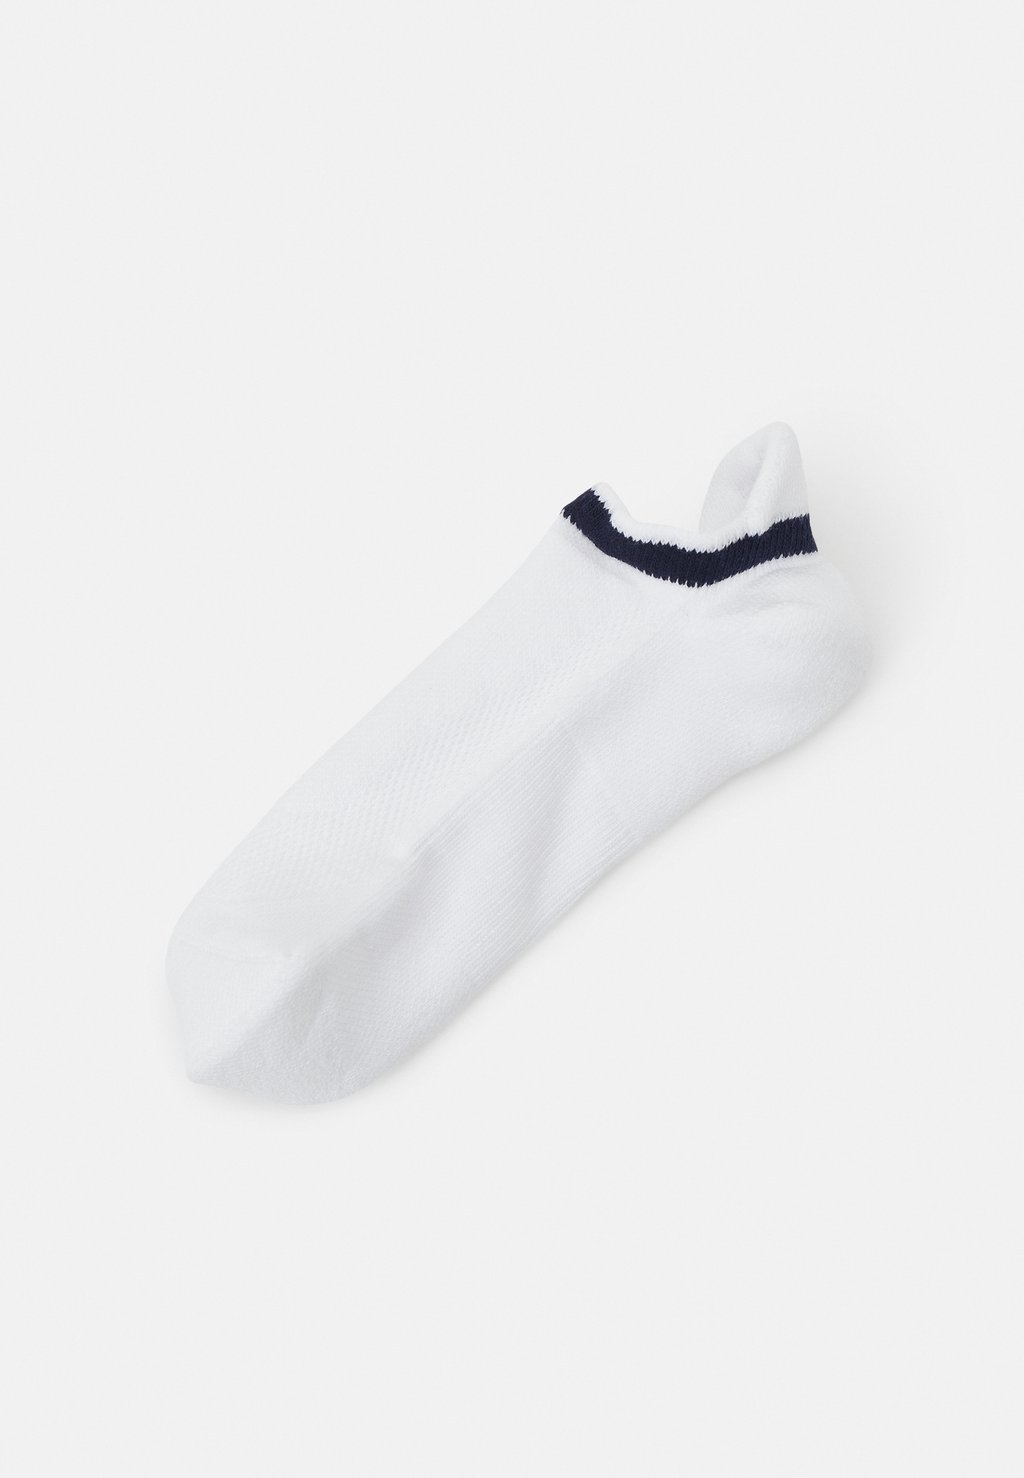 Спортивные носки Active Training Socks Lacoste, цвет white/navy blue носки спортивные yonex socks 8422 x3 white l